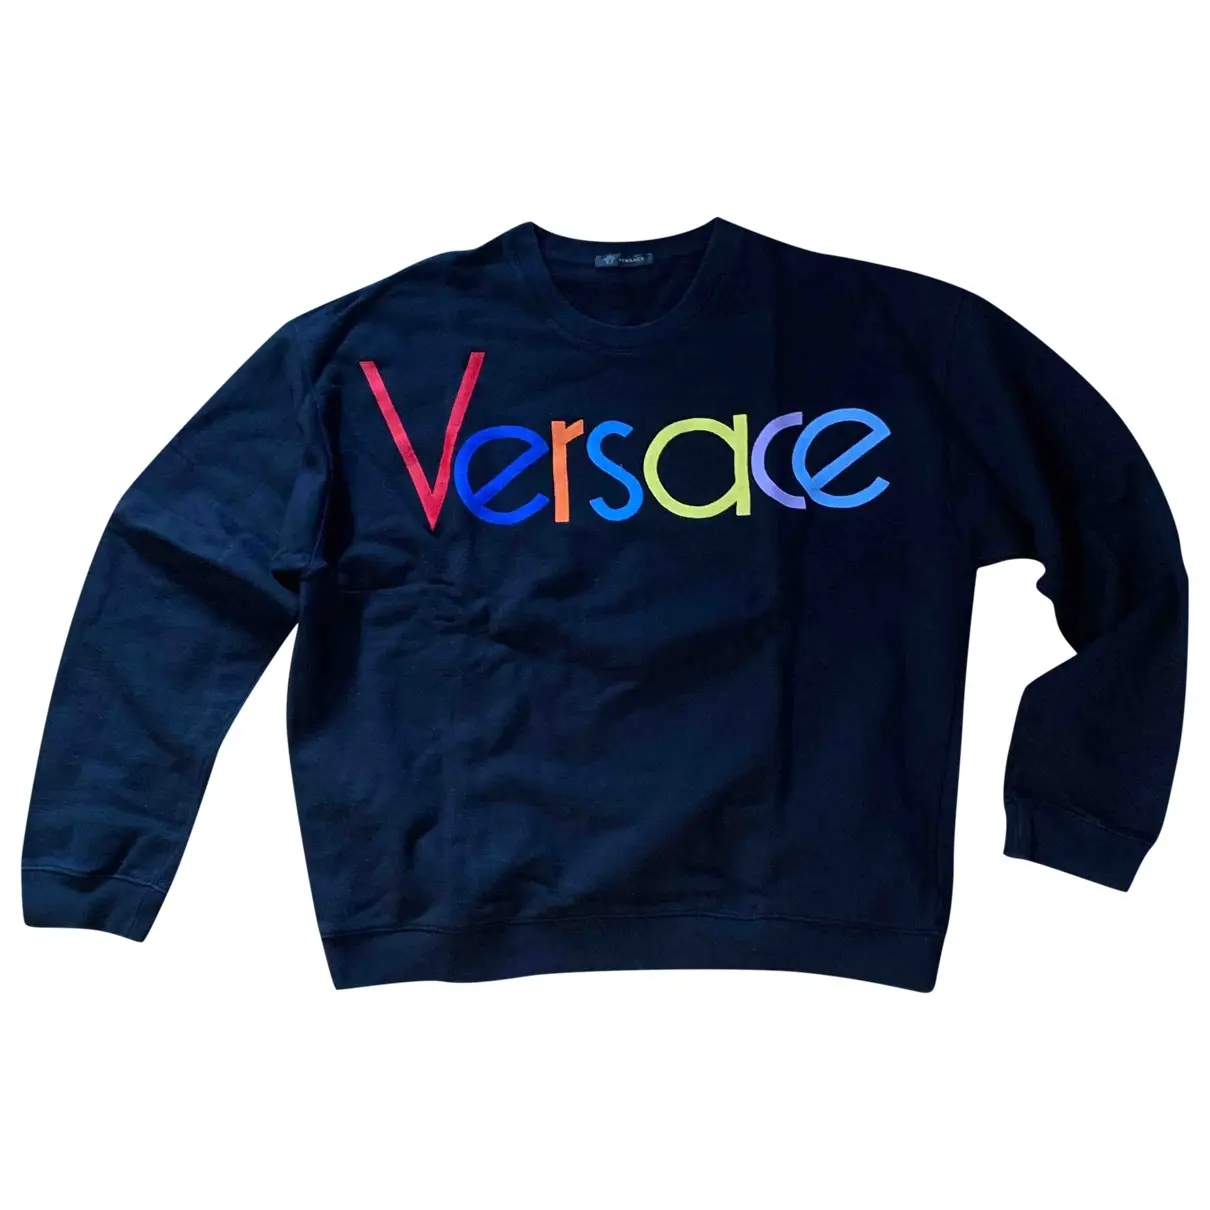 Black Cotton Knitwear & Sweatshirt Versace